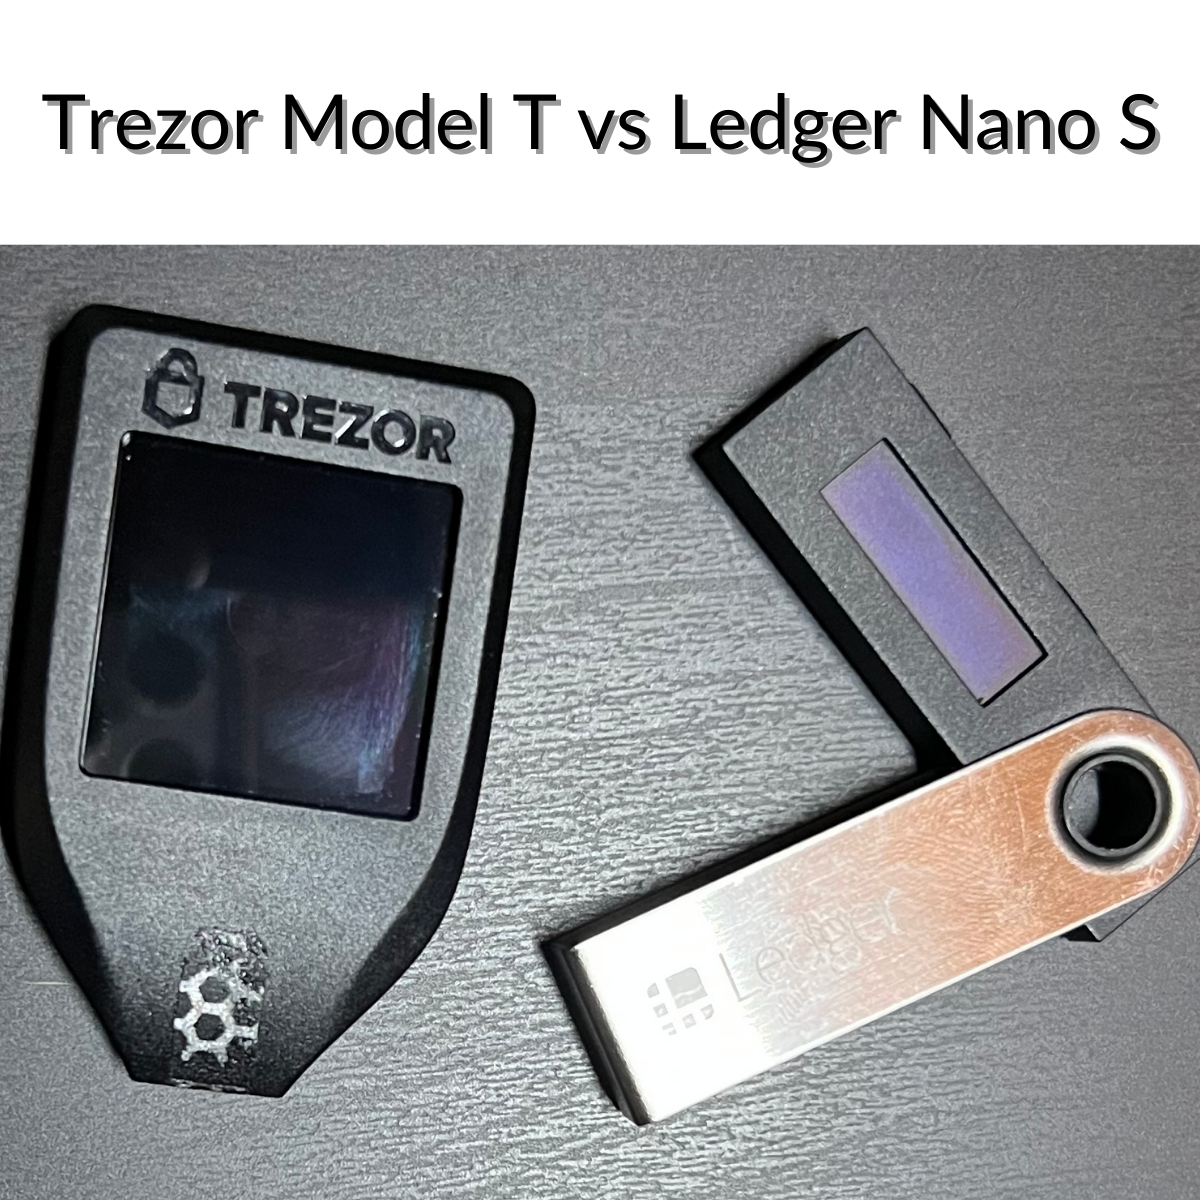 Trezor Model T vs Ledger Nano S